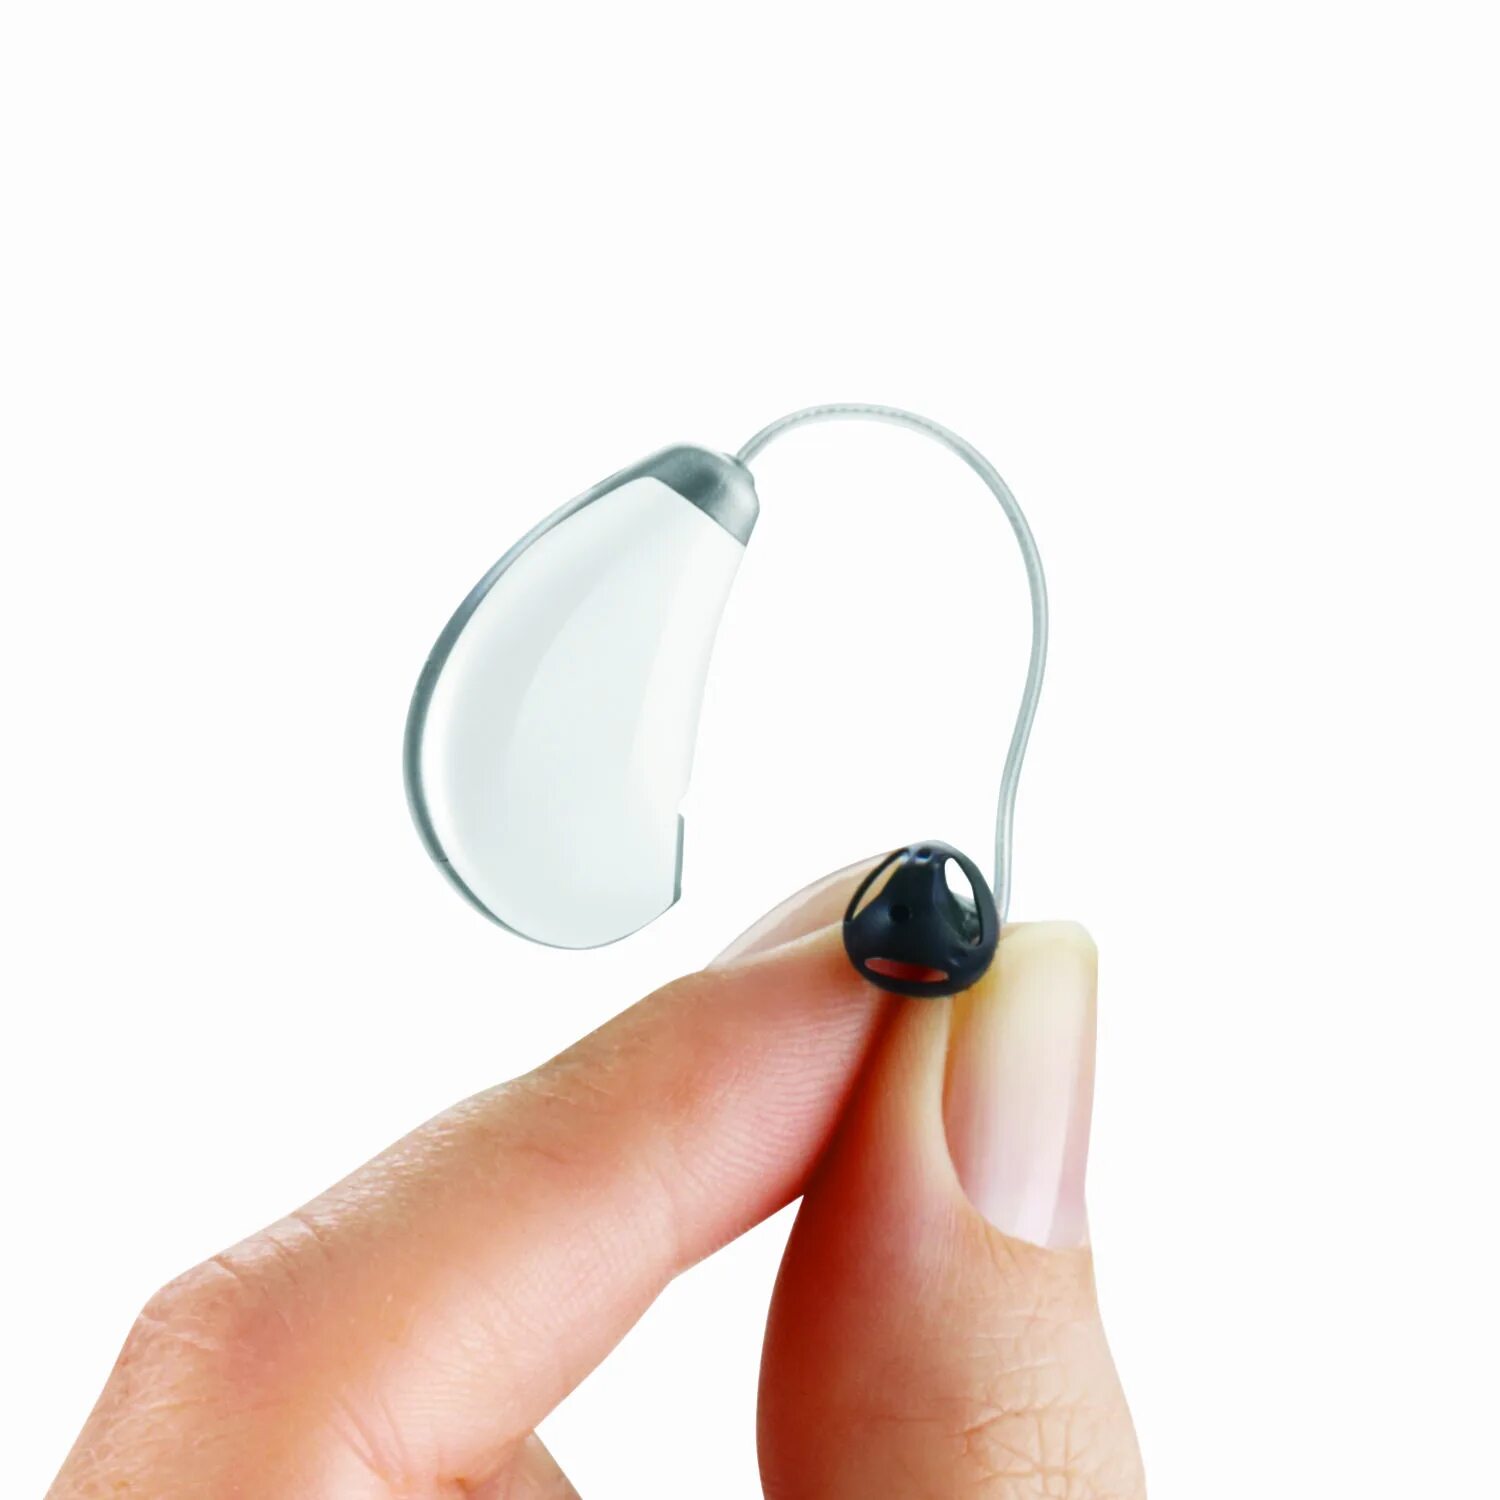 Внутриканальный слуховой аппарат Widex Mini s 270. Слуховой аппарат Tango 6m. Cros,NFM c090 слуховой аппарат. Слуховой аппарат Pure 2px. Слуховой аппарат купить в москве недорого